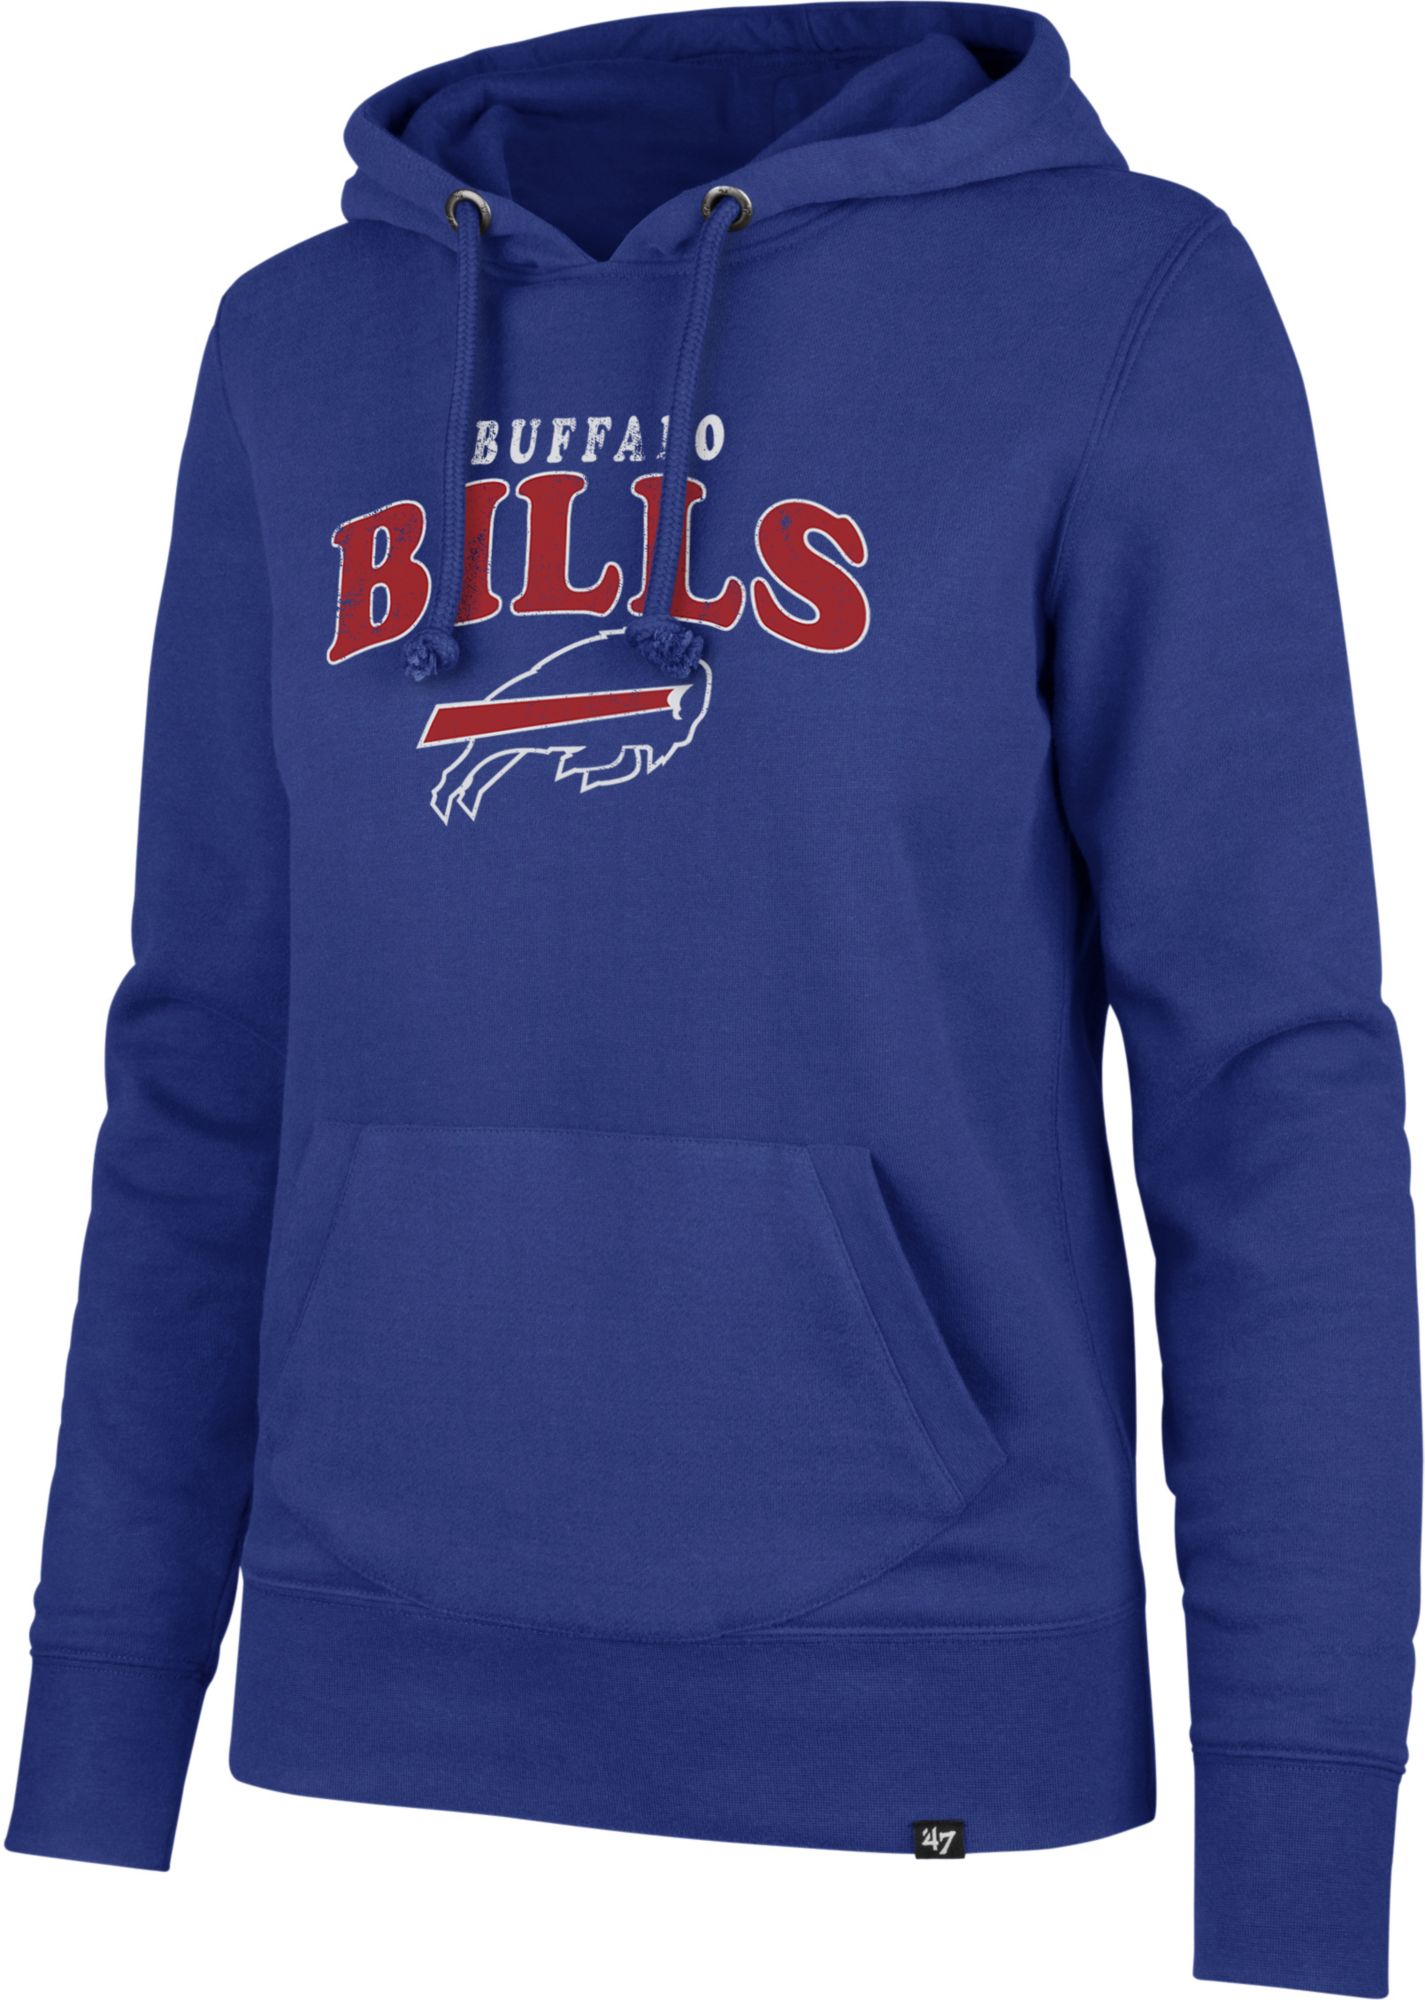 buffalo bills women's gear